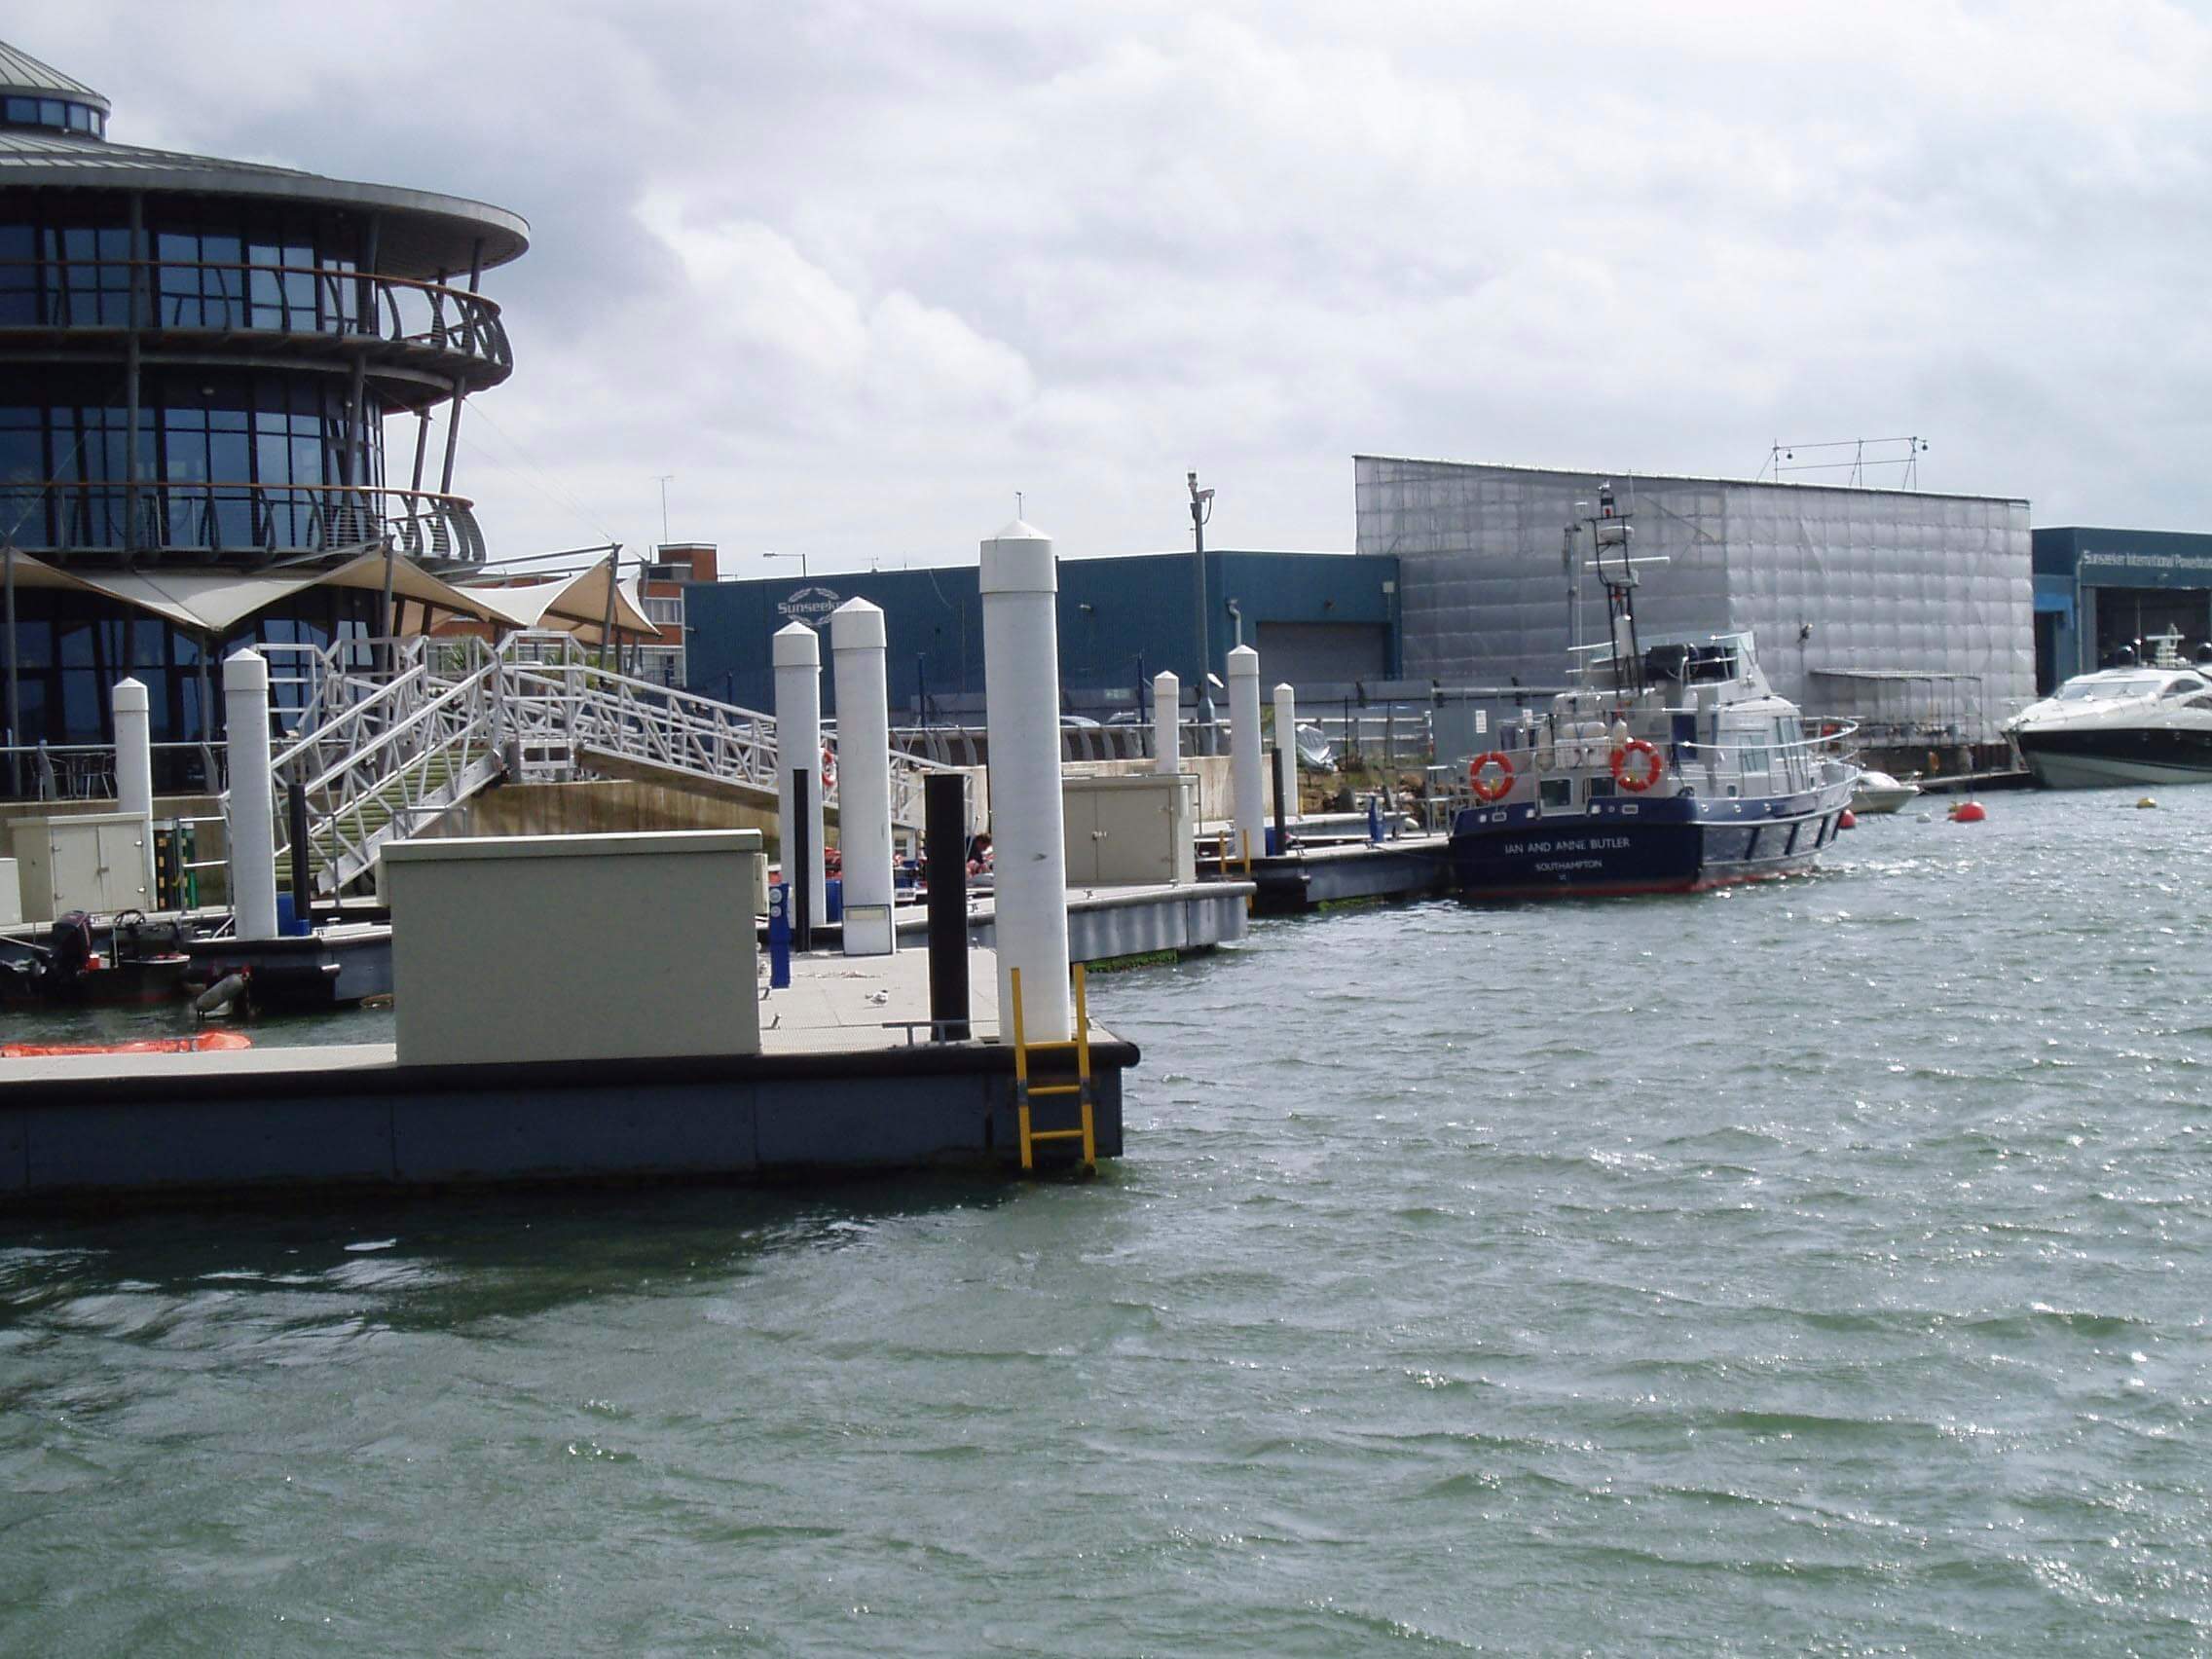 Soluciones de seguridad perimetral aplicadas a puertos